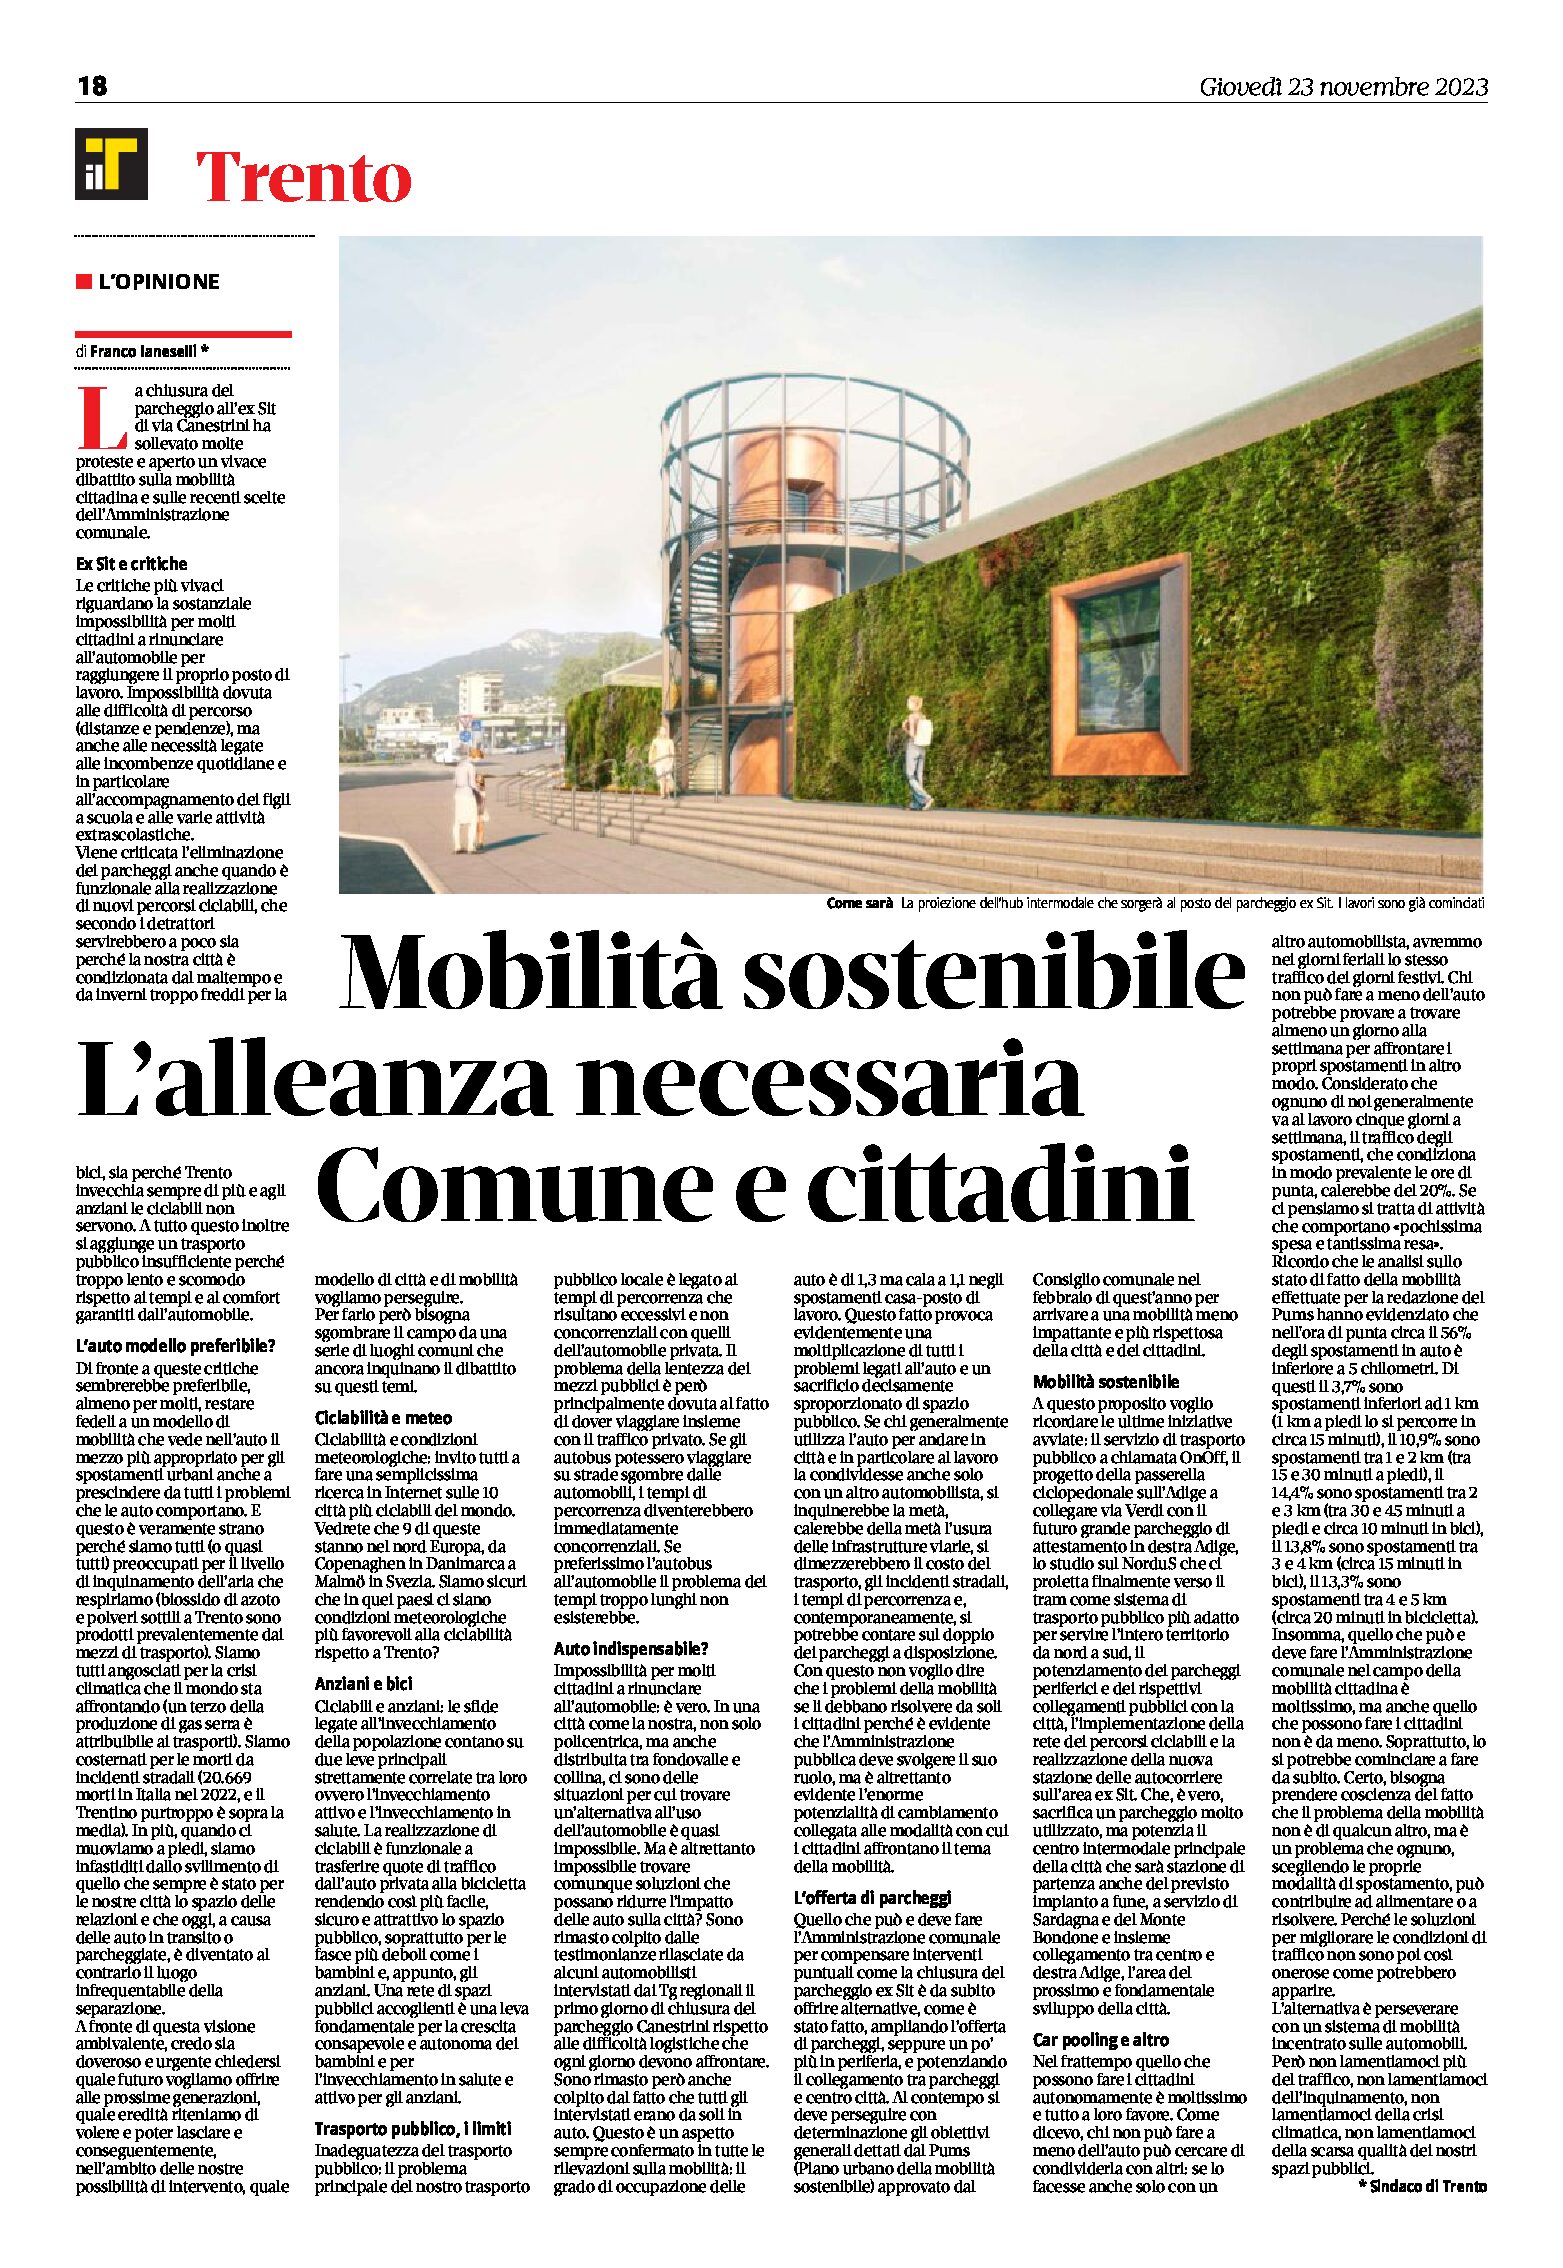 Trento: mobilità sostenibile. Opinione del sindaco Ianeselli